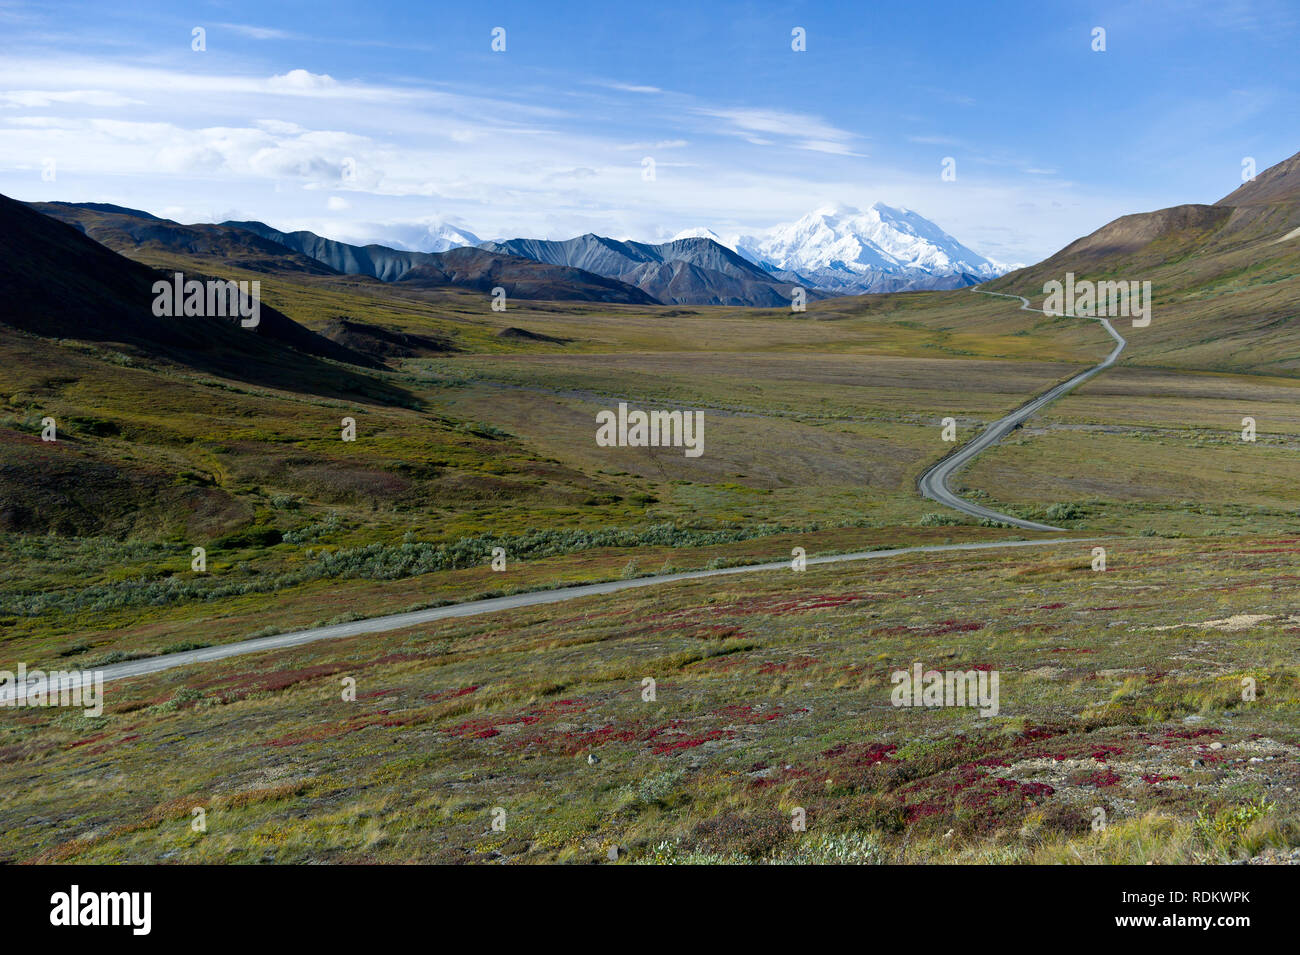 Alaska's Mount McKinley est le plus haut sommet de l'Amérique du Nord à 20 320 pieds de haut, et constitue le point culminant d'une visite à Denali National Park et préserver. Banque D'Images